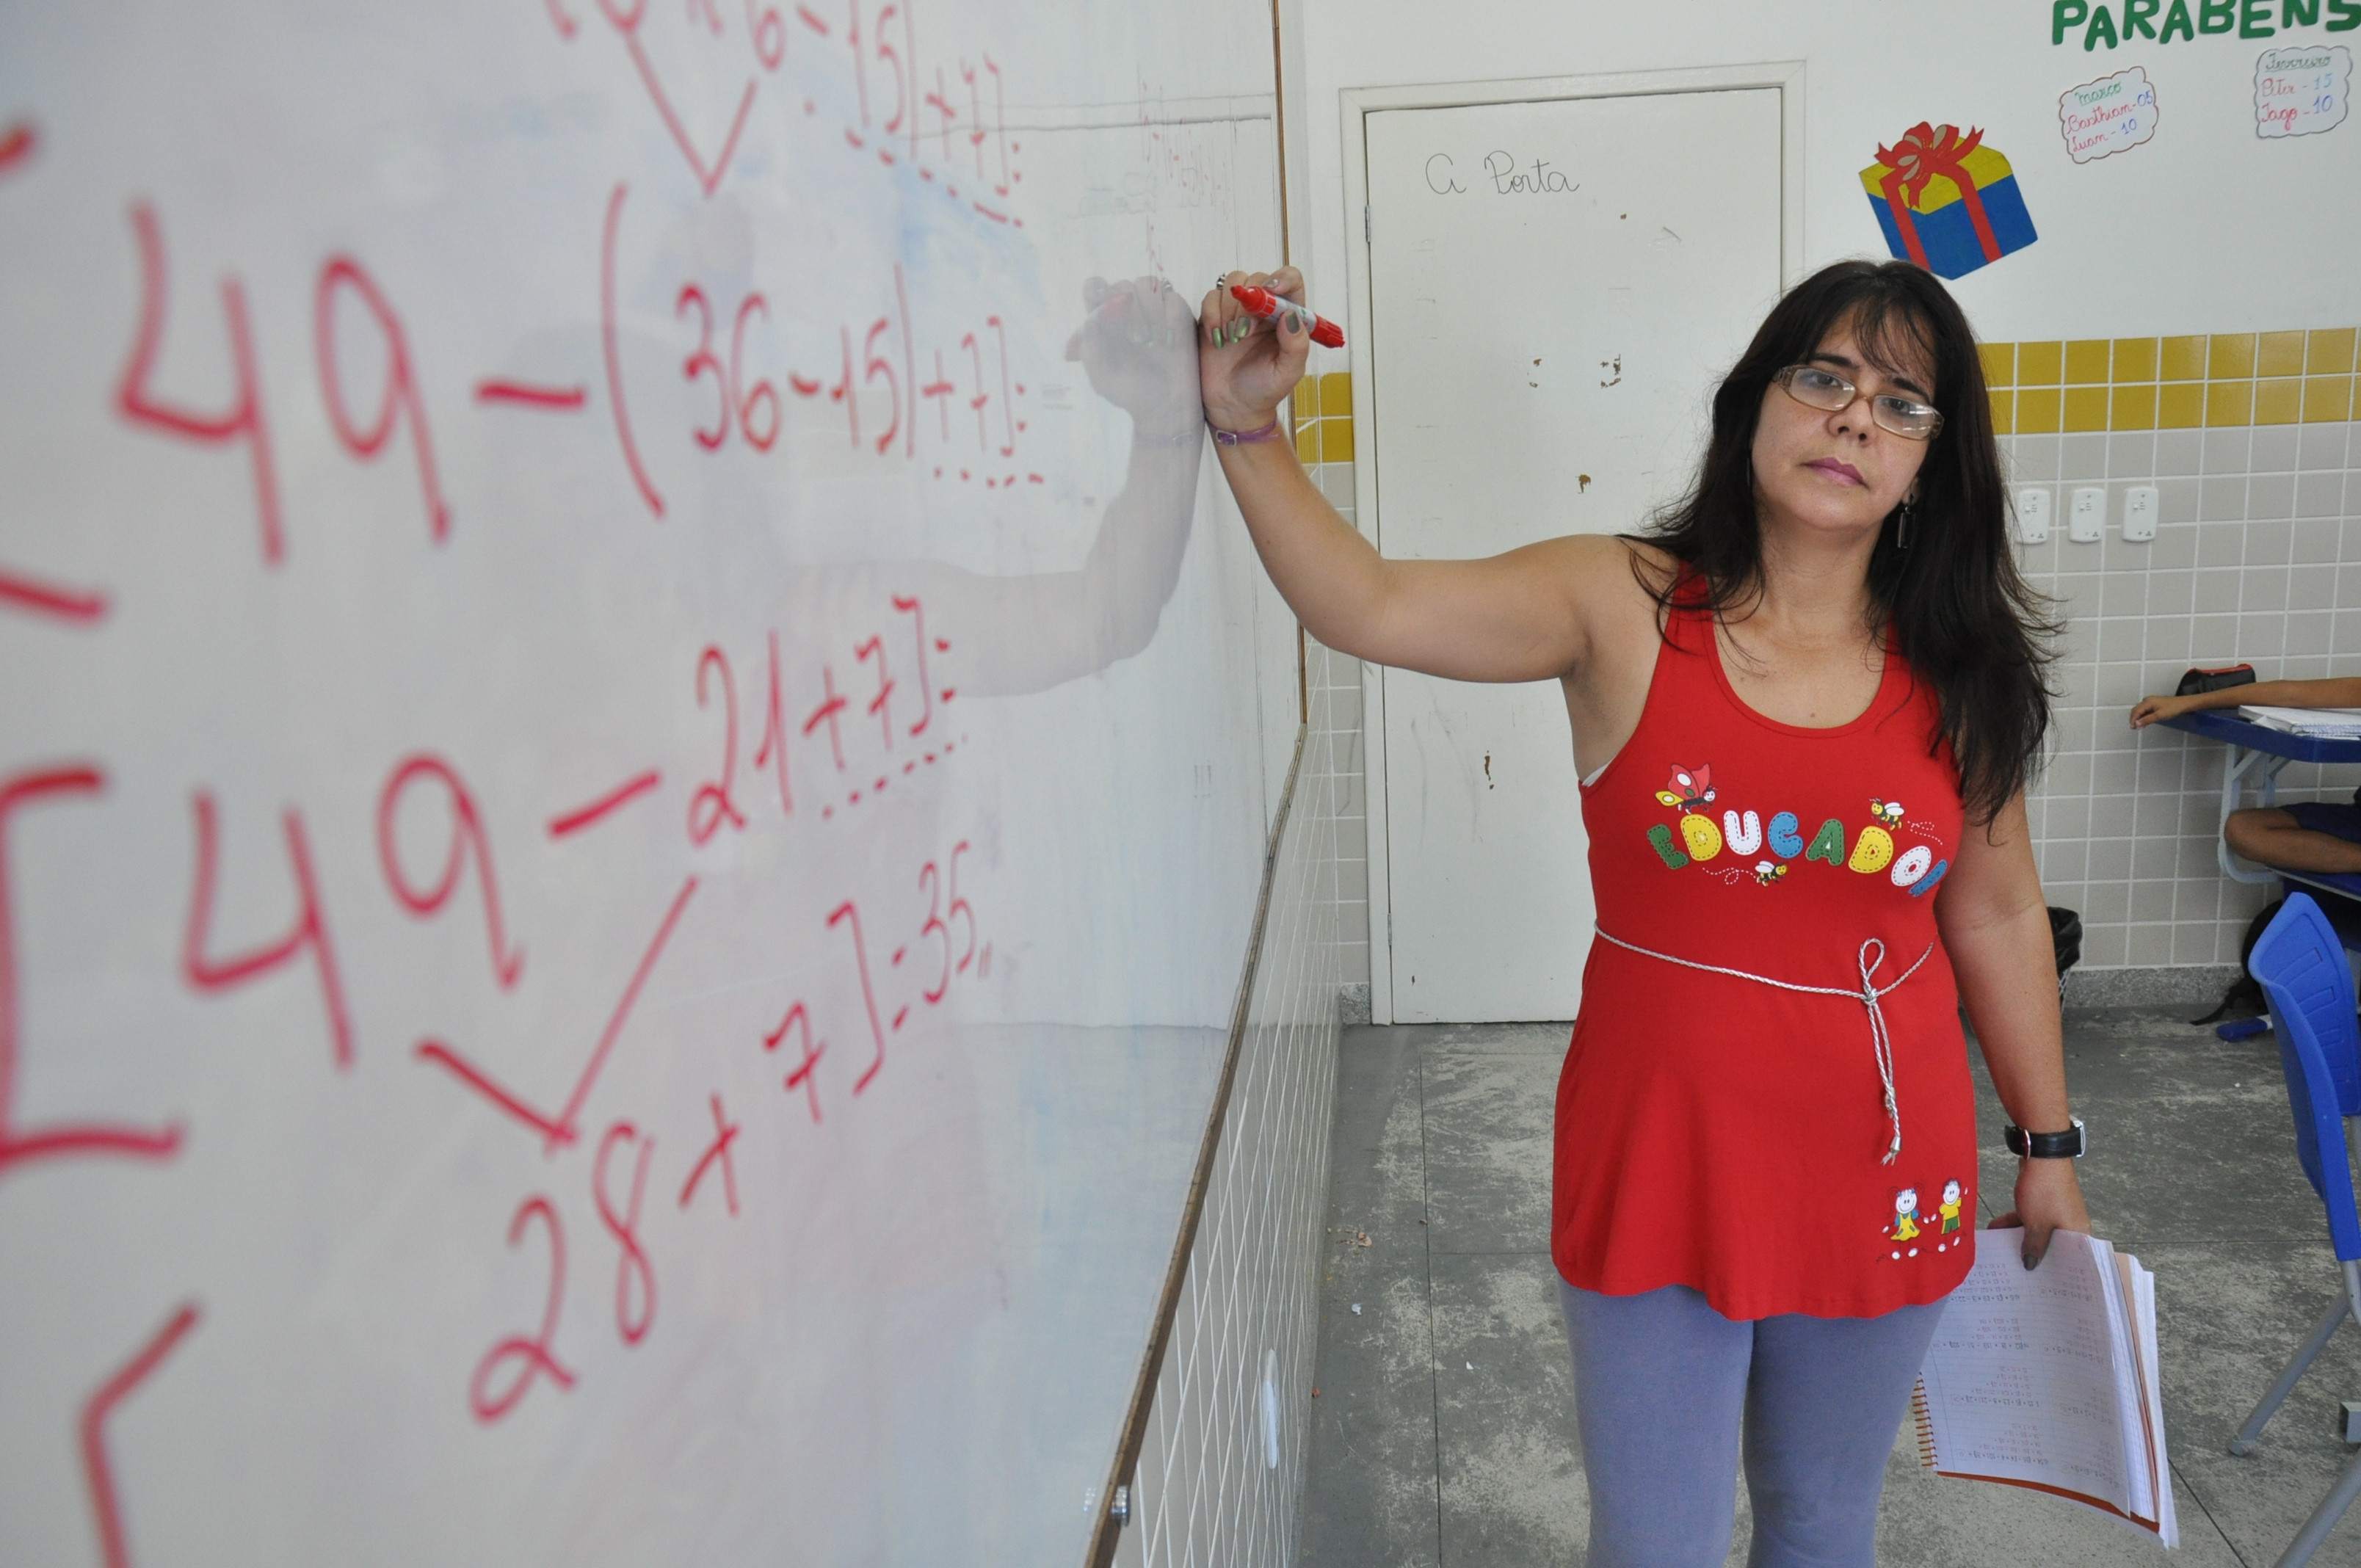 A professora Deise Pandino foi aprovada no concurso público, realizado pela prefeitura em 2012 (Foto: Rodolfo Lins)